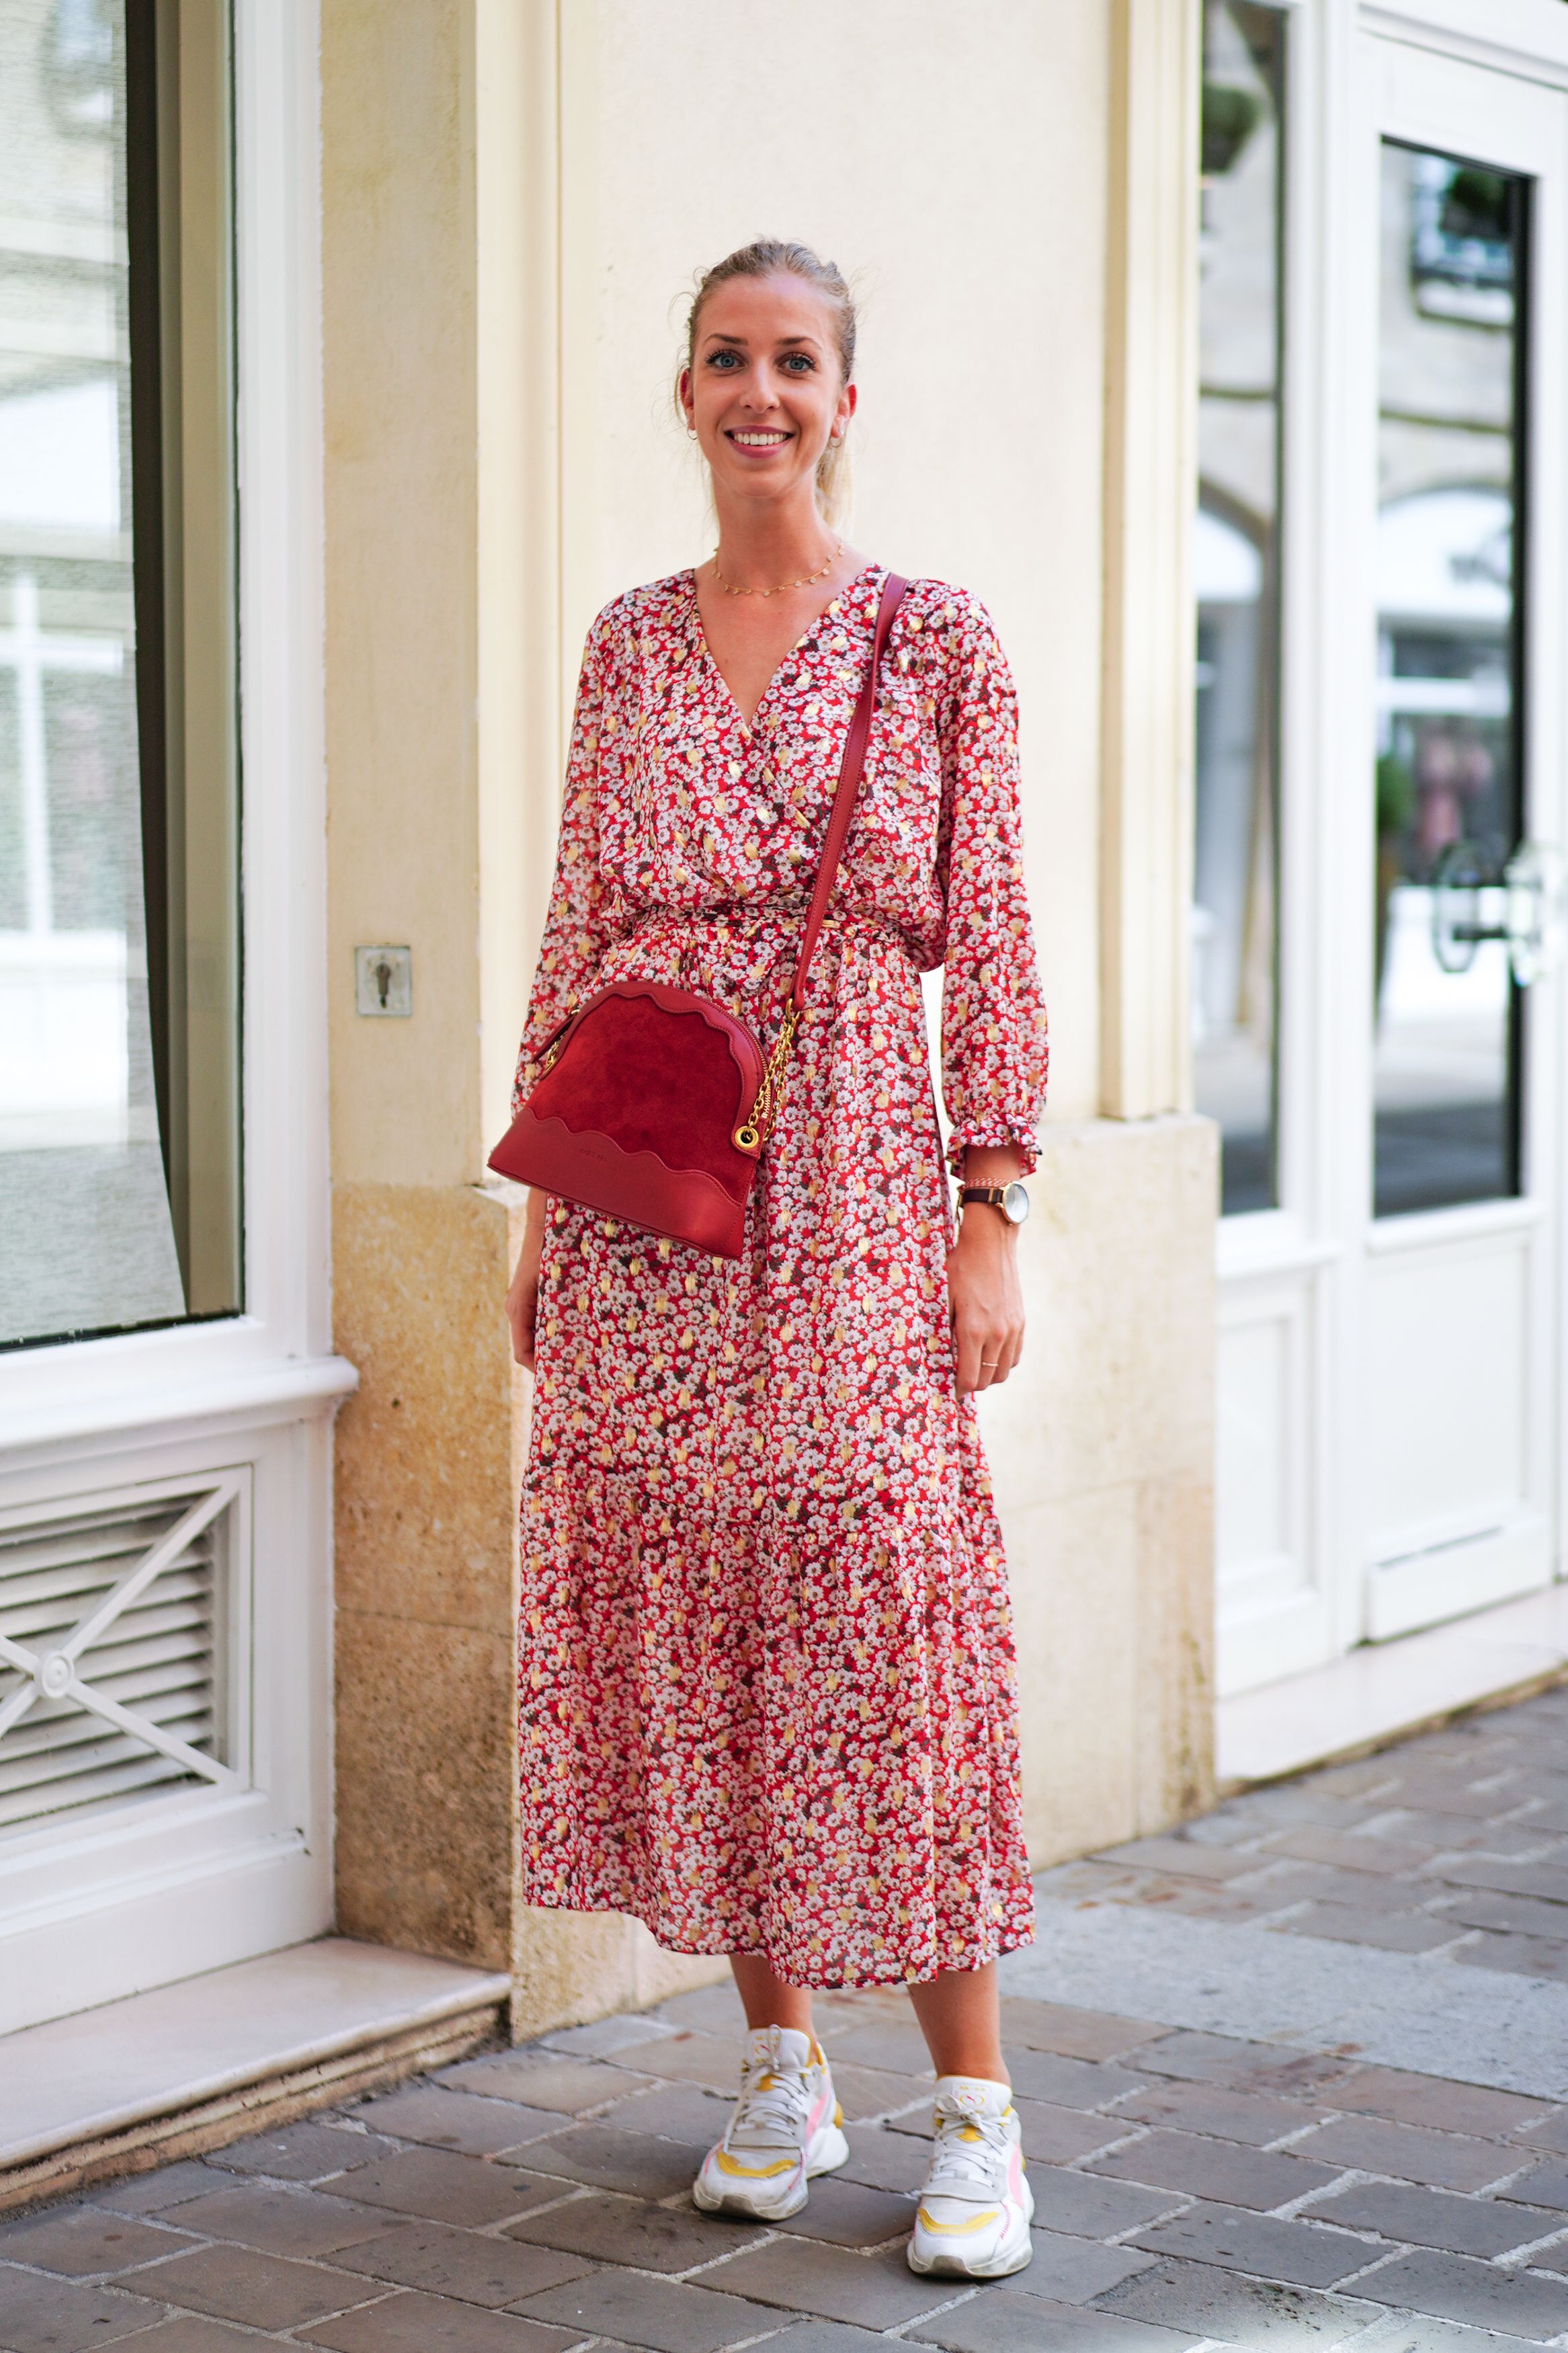 今年も話題の パリ最新情報「パリジェンヌの夏の装いは、一枚で着映え